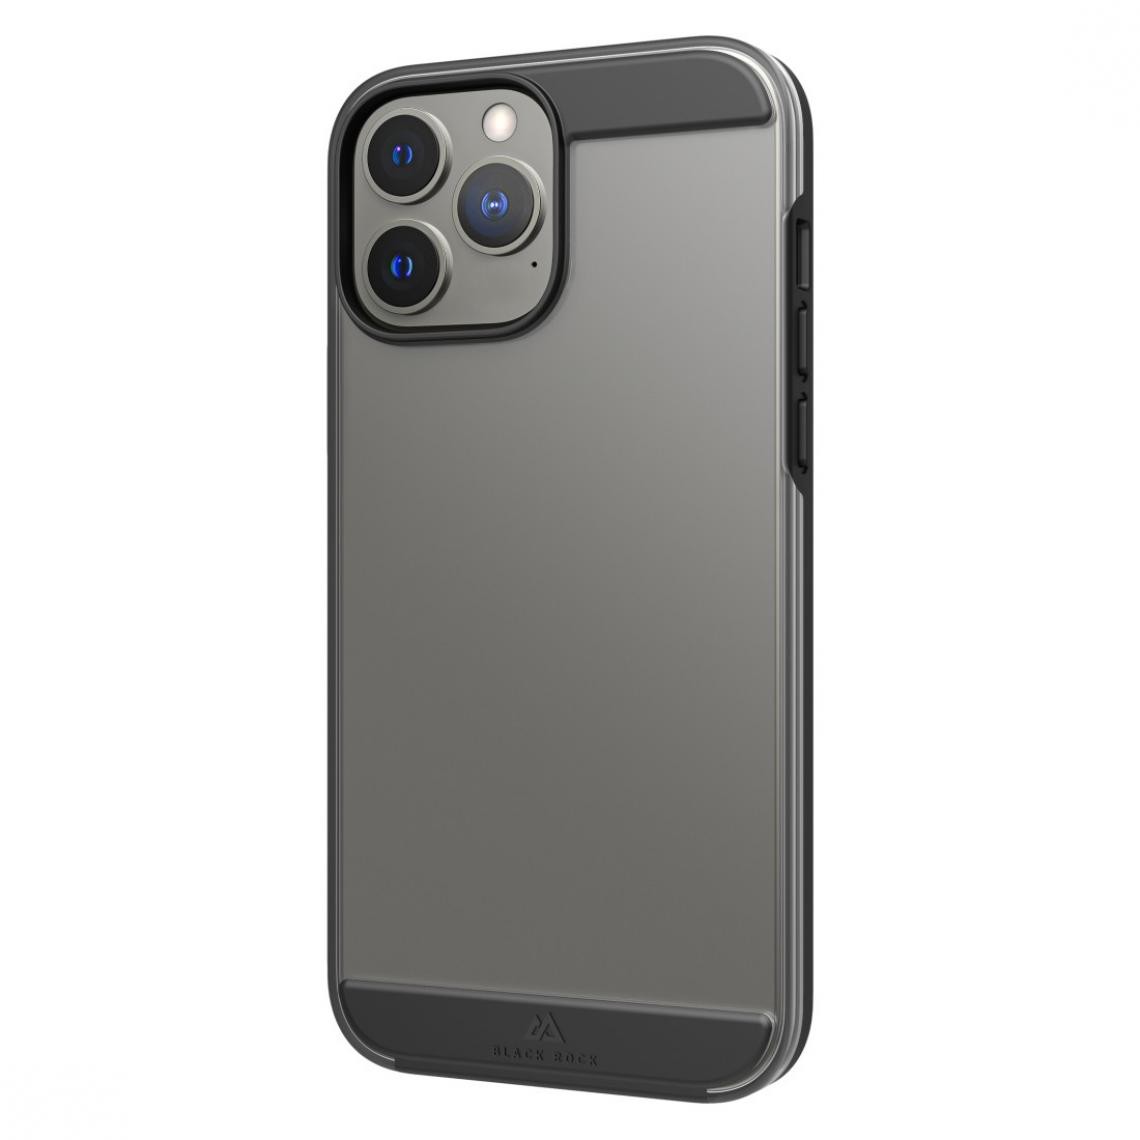 Black Rock - Coque de protection "Air robust" pour Apple iPhone 13 Pro Max, noire - Coque, étui smartphone